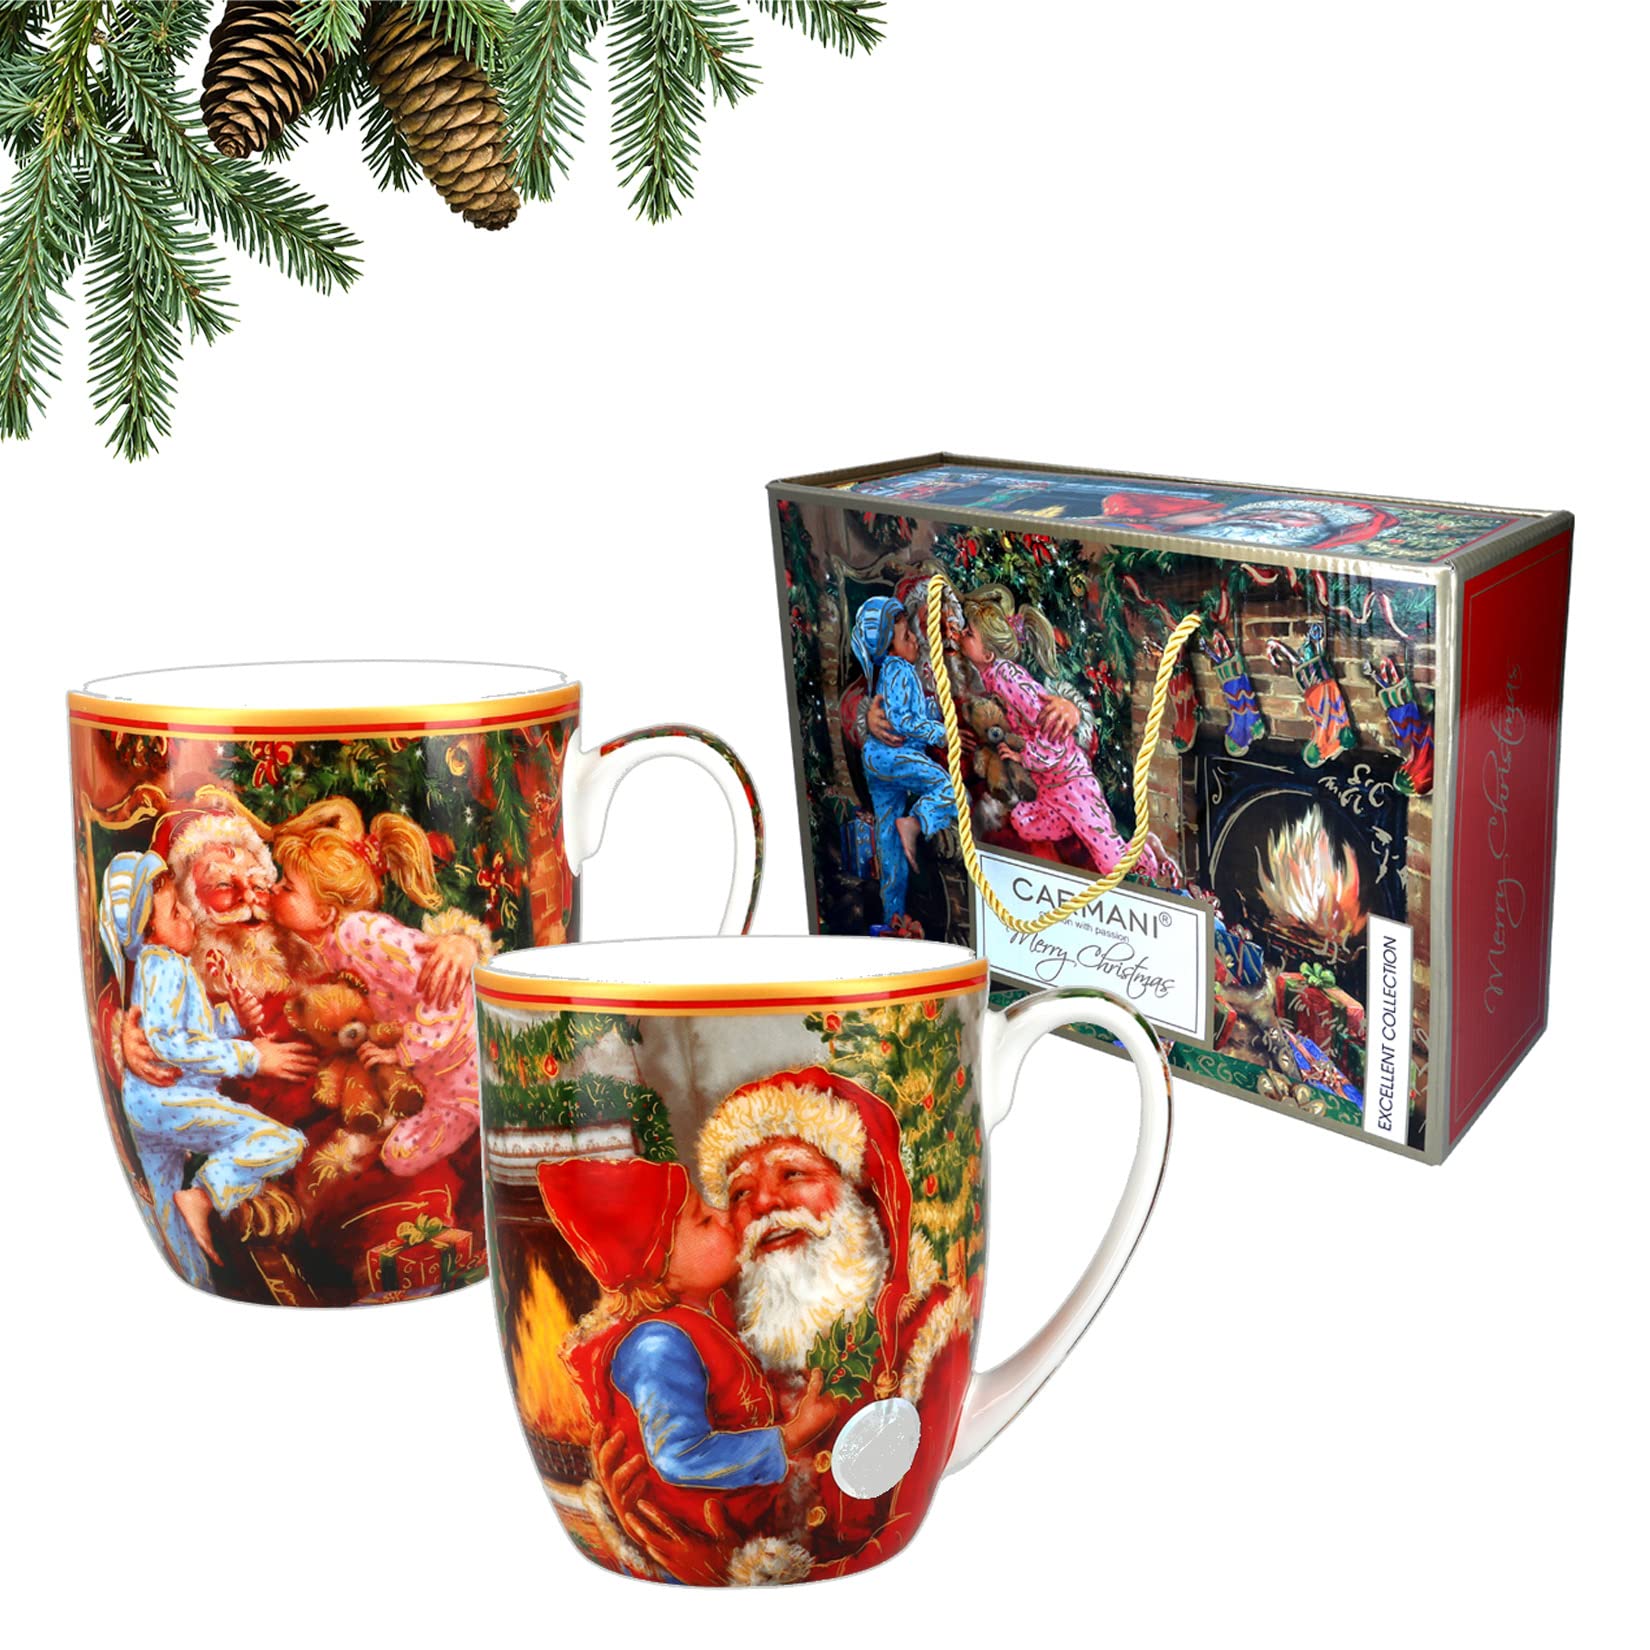 Carmani - Set mit 2 weihnachtlichen Tassen, festliche Partybecher für Tee, Kaffee, heiße Schokolade, dekoriert mit Weihnachtsmotiv, 400 ml